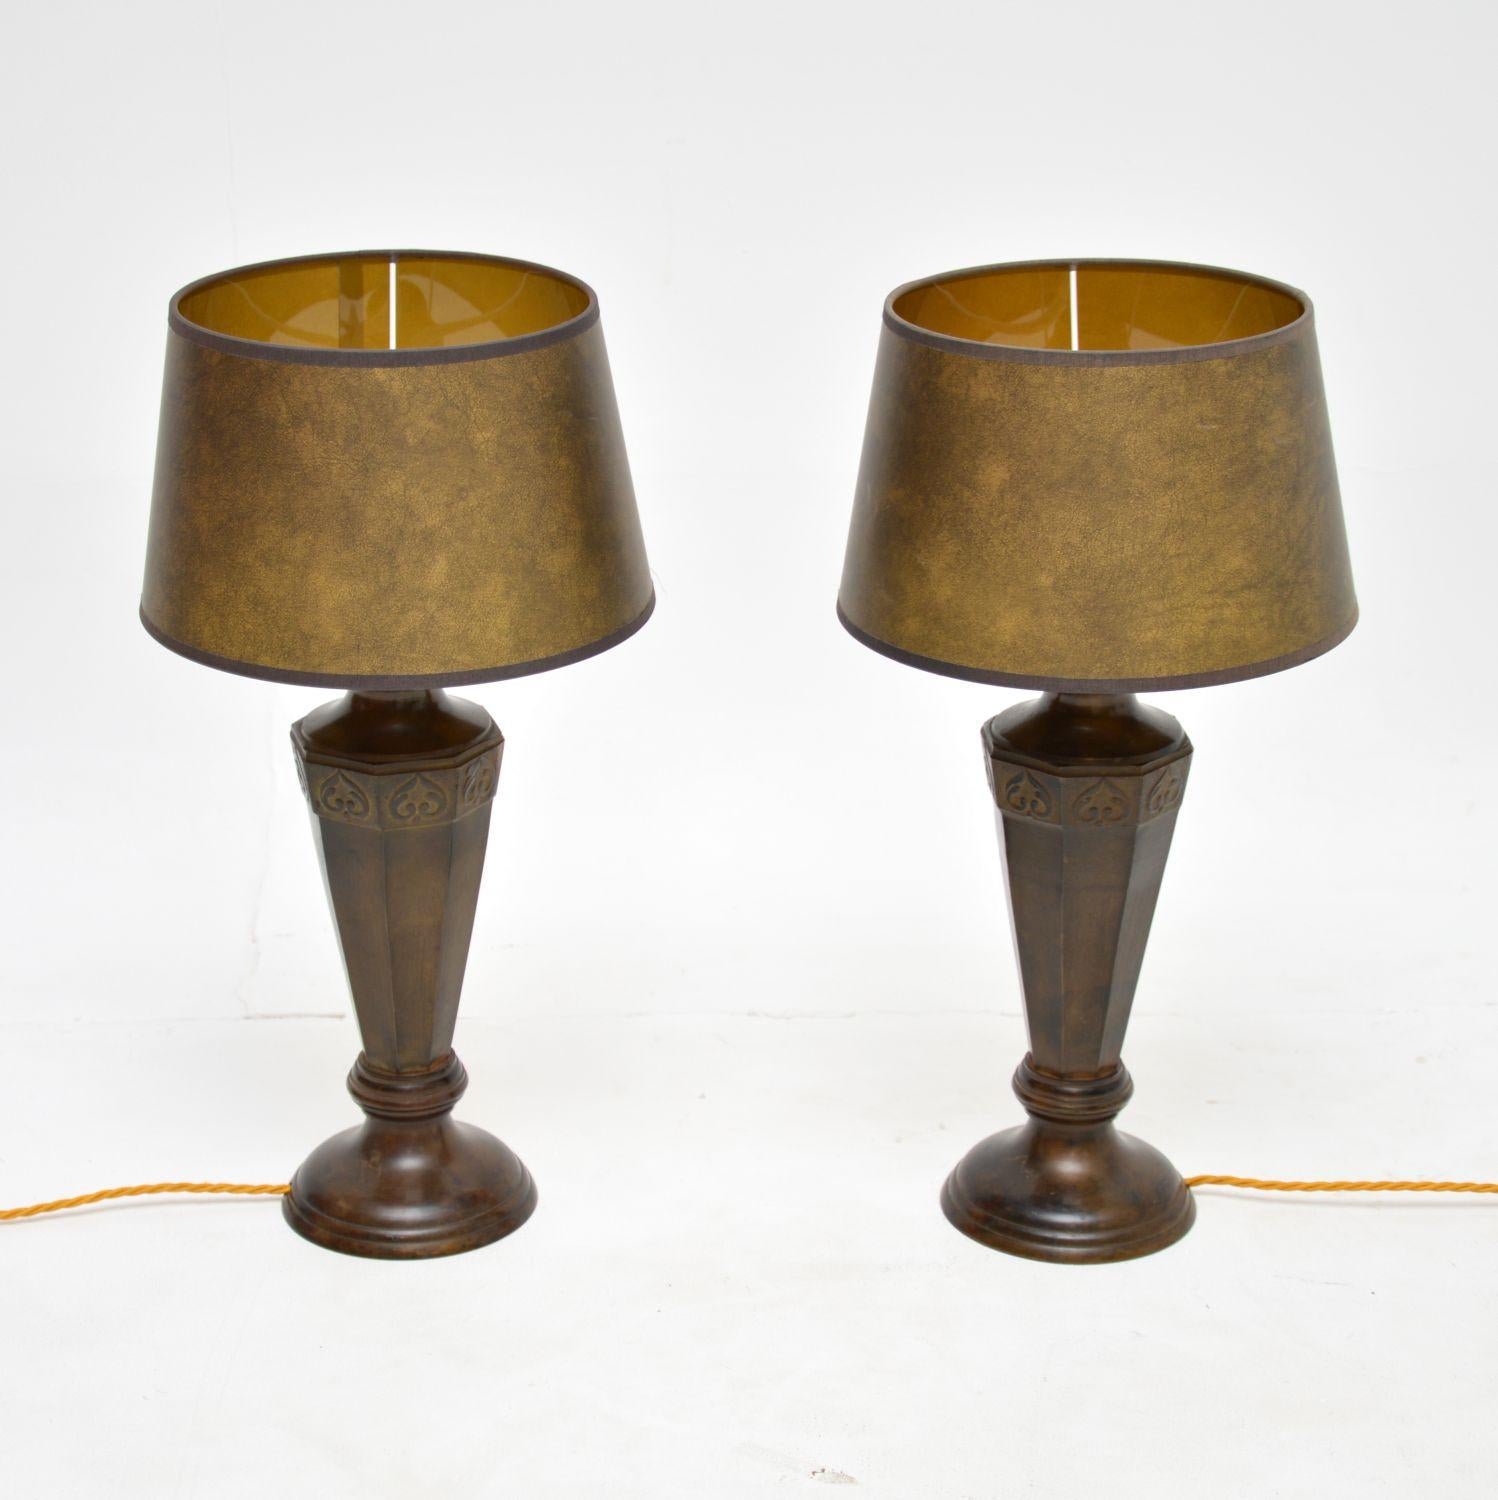 Ein fantastisches Paar von Vintage-Tischlampen aus massiver Bronze. Sie sind im antiken neoklassizistischen Stil gehalten und stammen wahrscheinlich aus den 1950er Jahren.

Die Qualität ist hervorragend, sie haben eine schöne Größe und werden mit